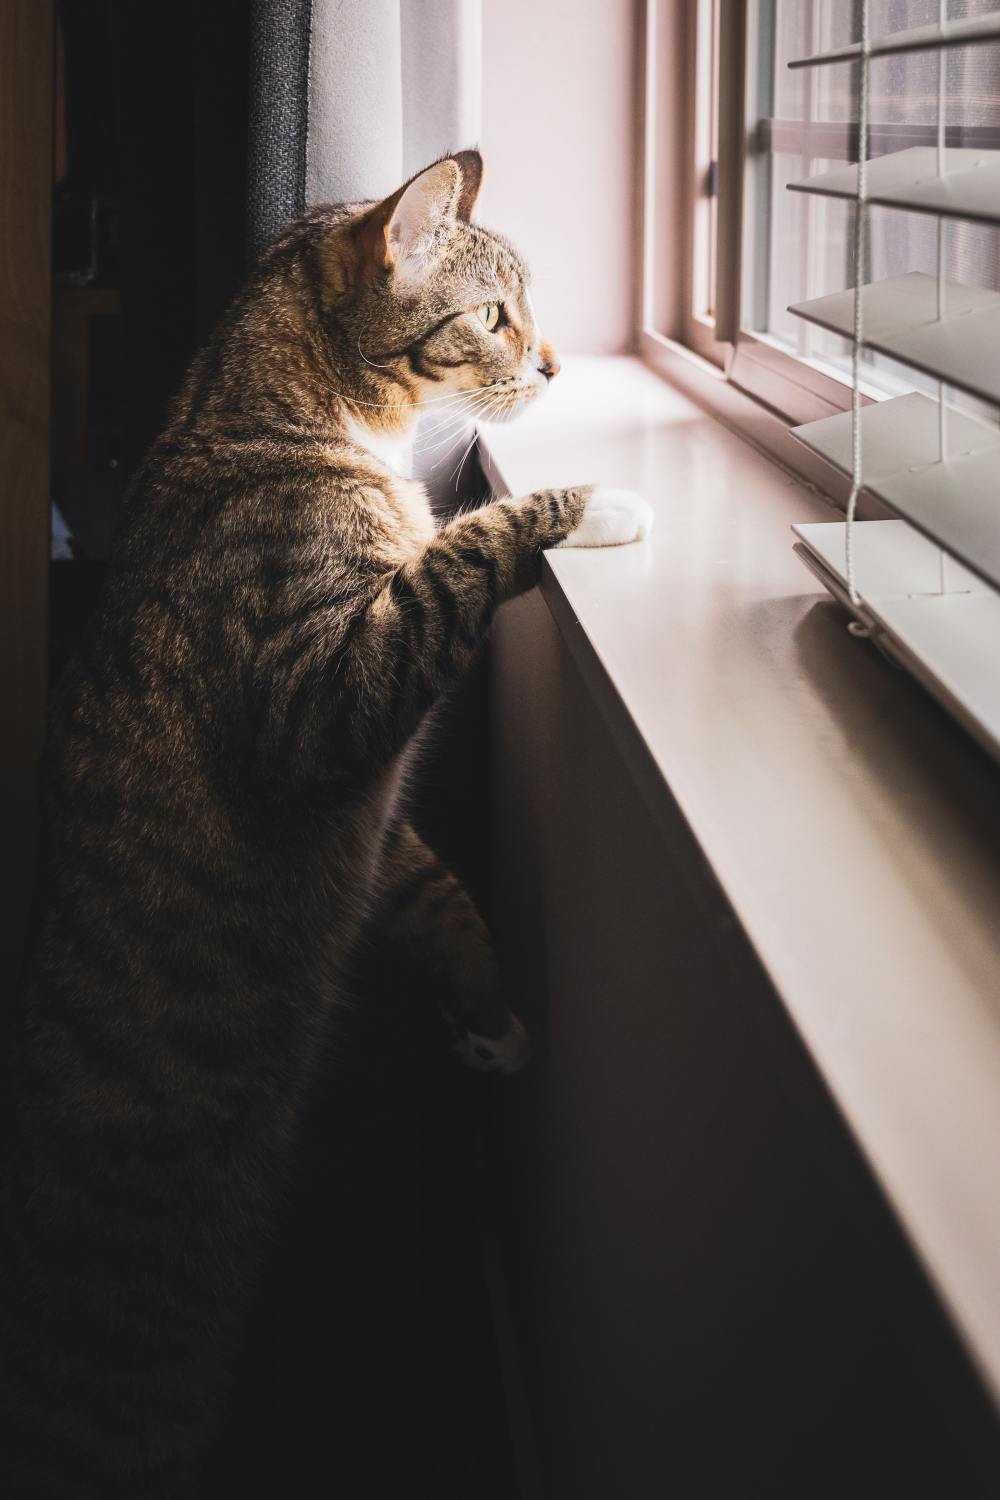 Cat at Window